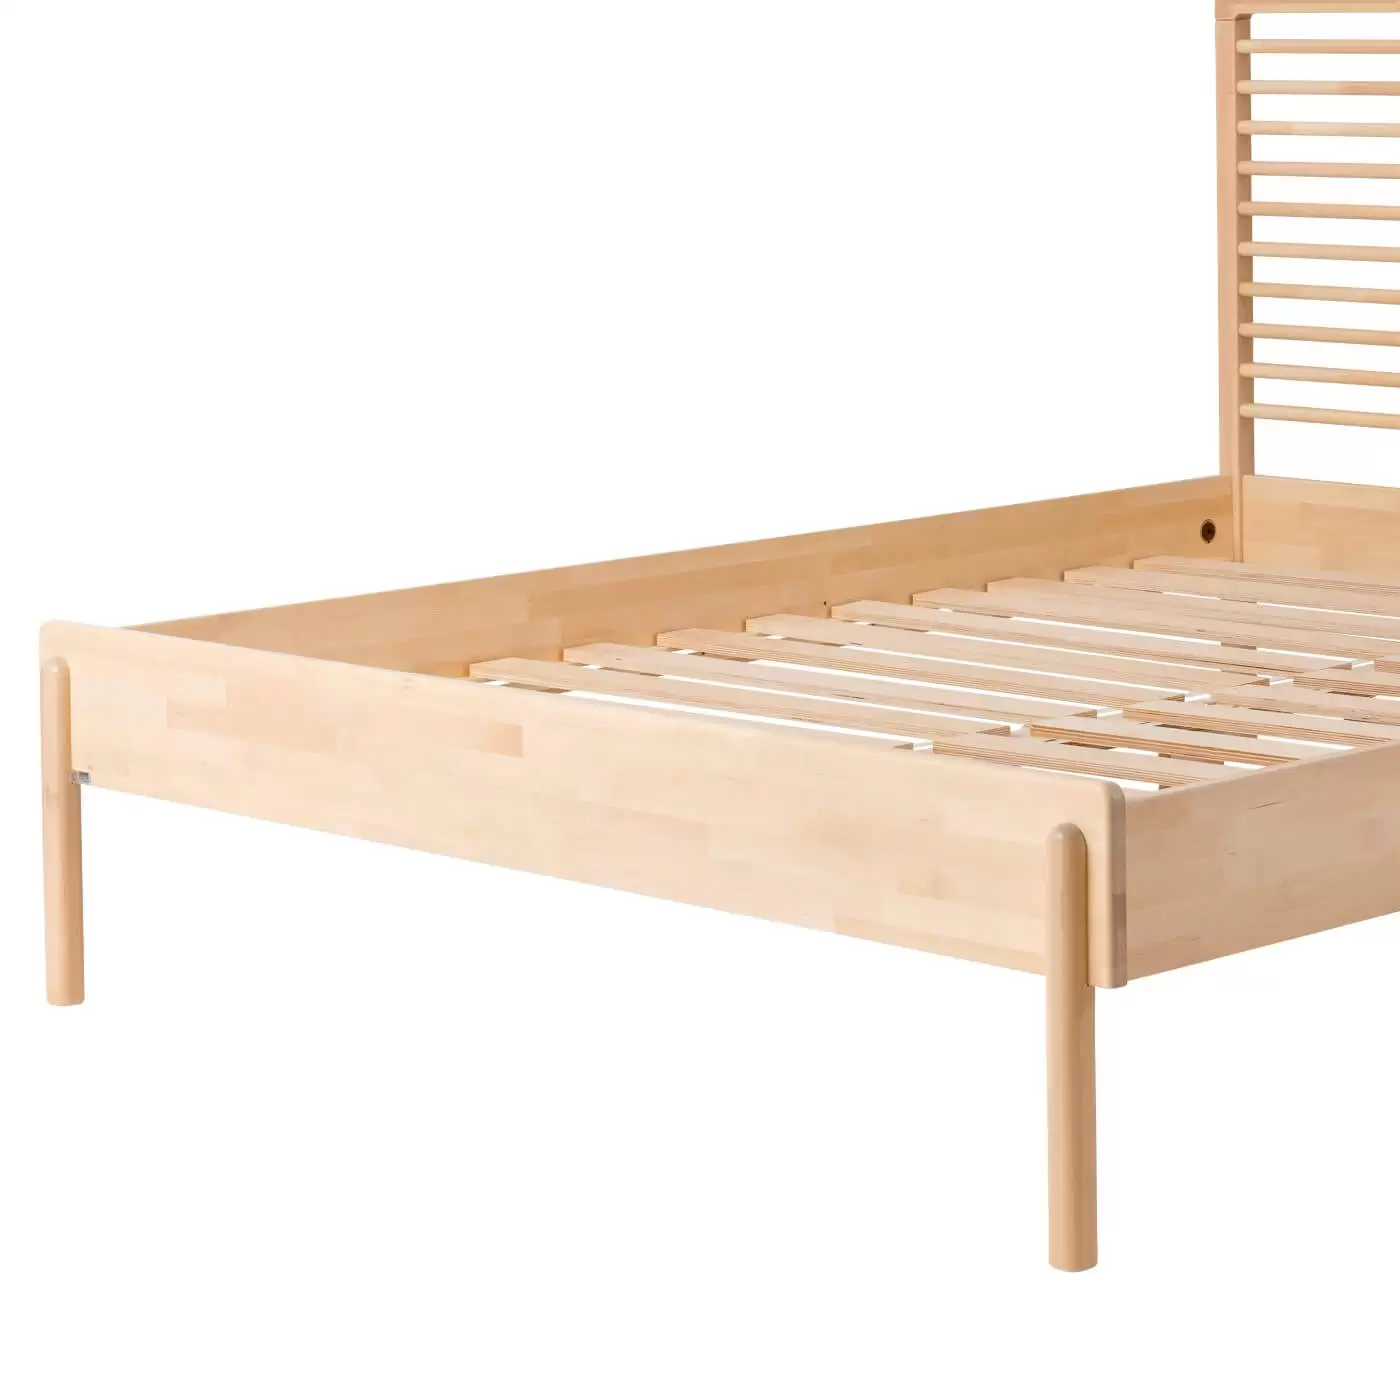 Łóżko design LENNU. Fragment z widocznymi wysokimi nóżkami łóżka bez materaca dwuosobowego 160x200 z drewna brzozy. Skandynawski nowoczesny design